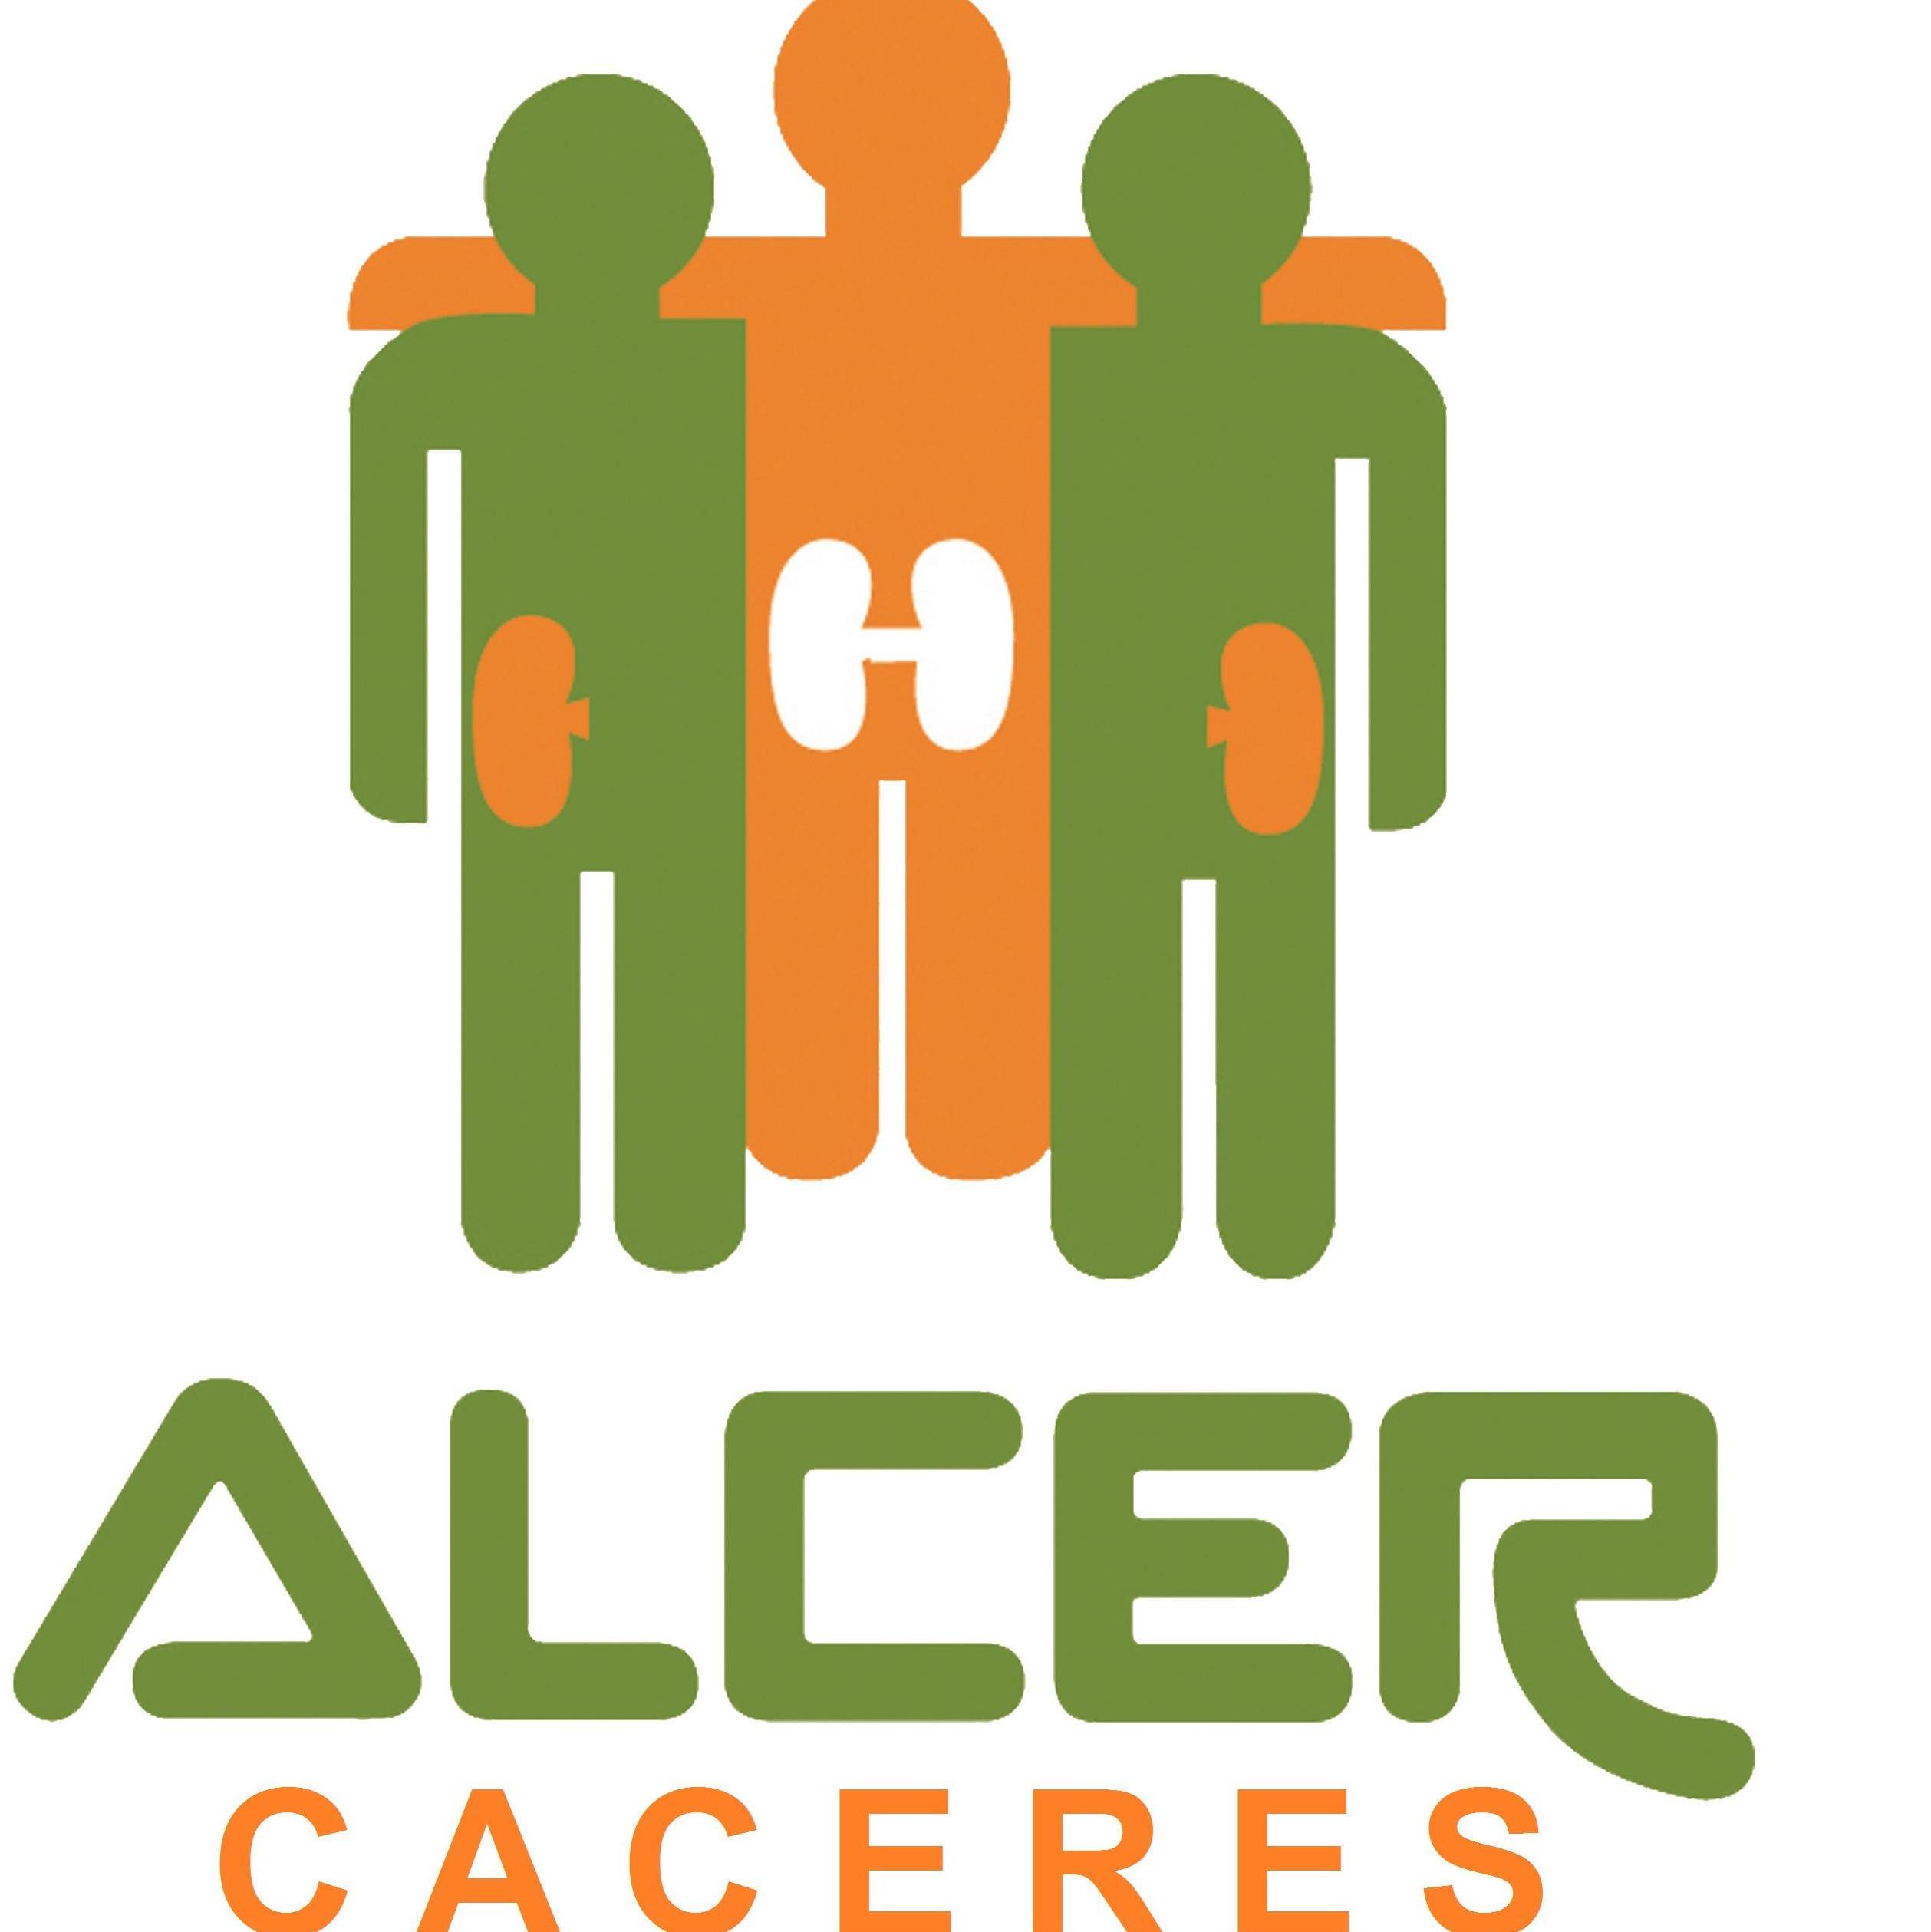 ALCER Cáceres - El teu perfil. Vota, valora i comunica’t